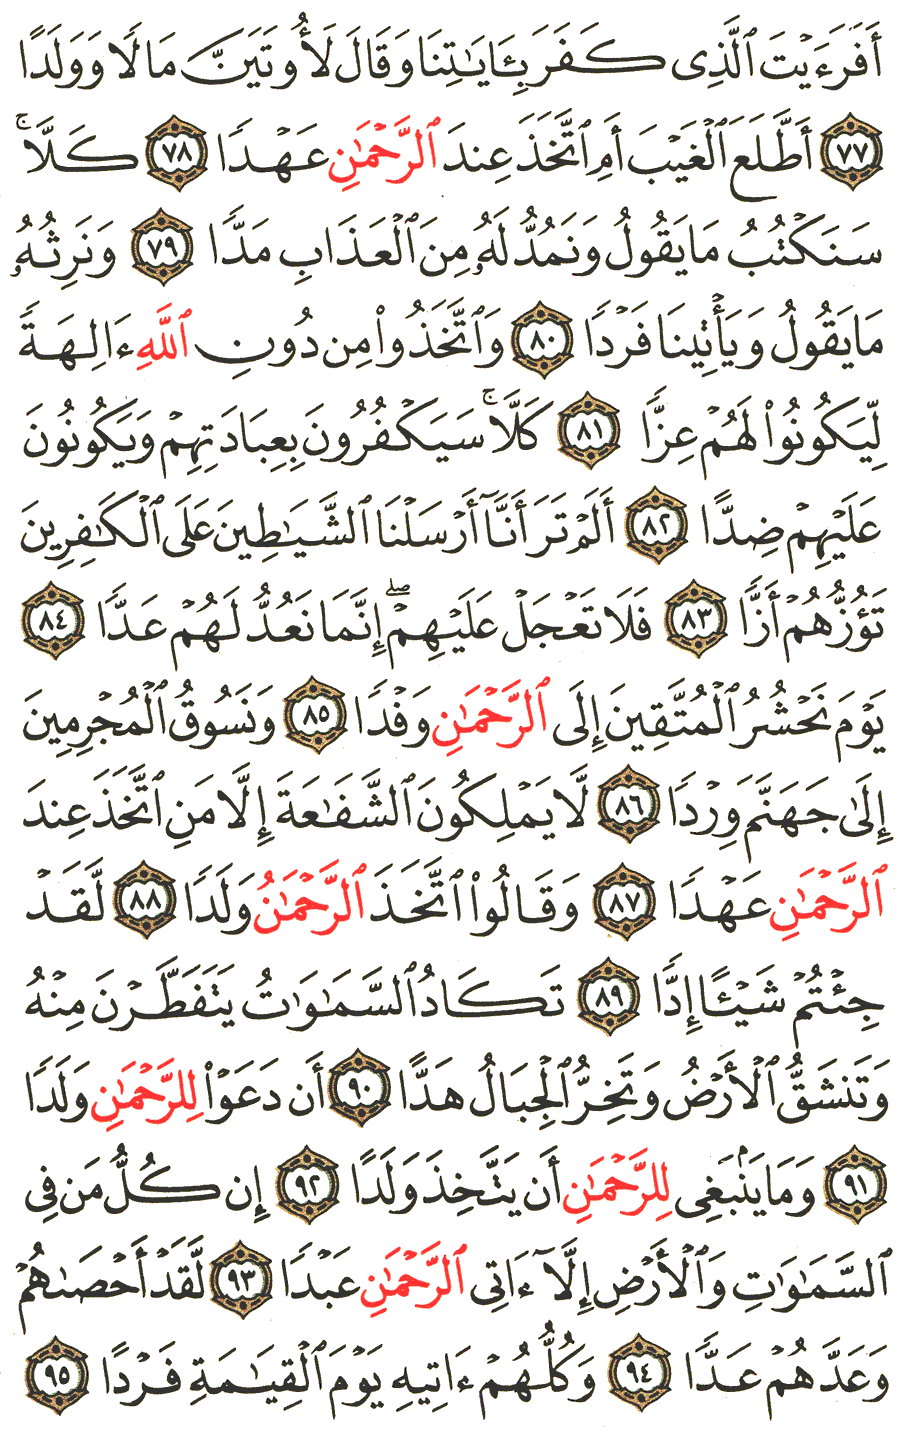 الصفحة 311 من القرآن الكريم